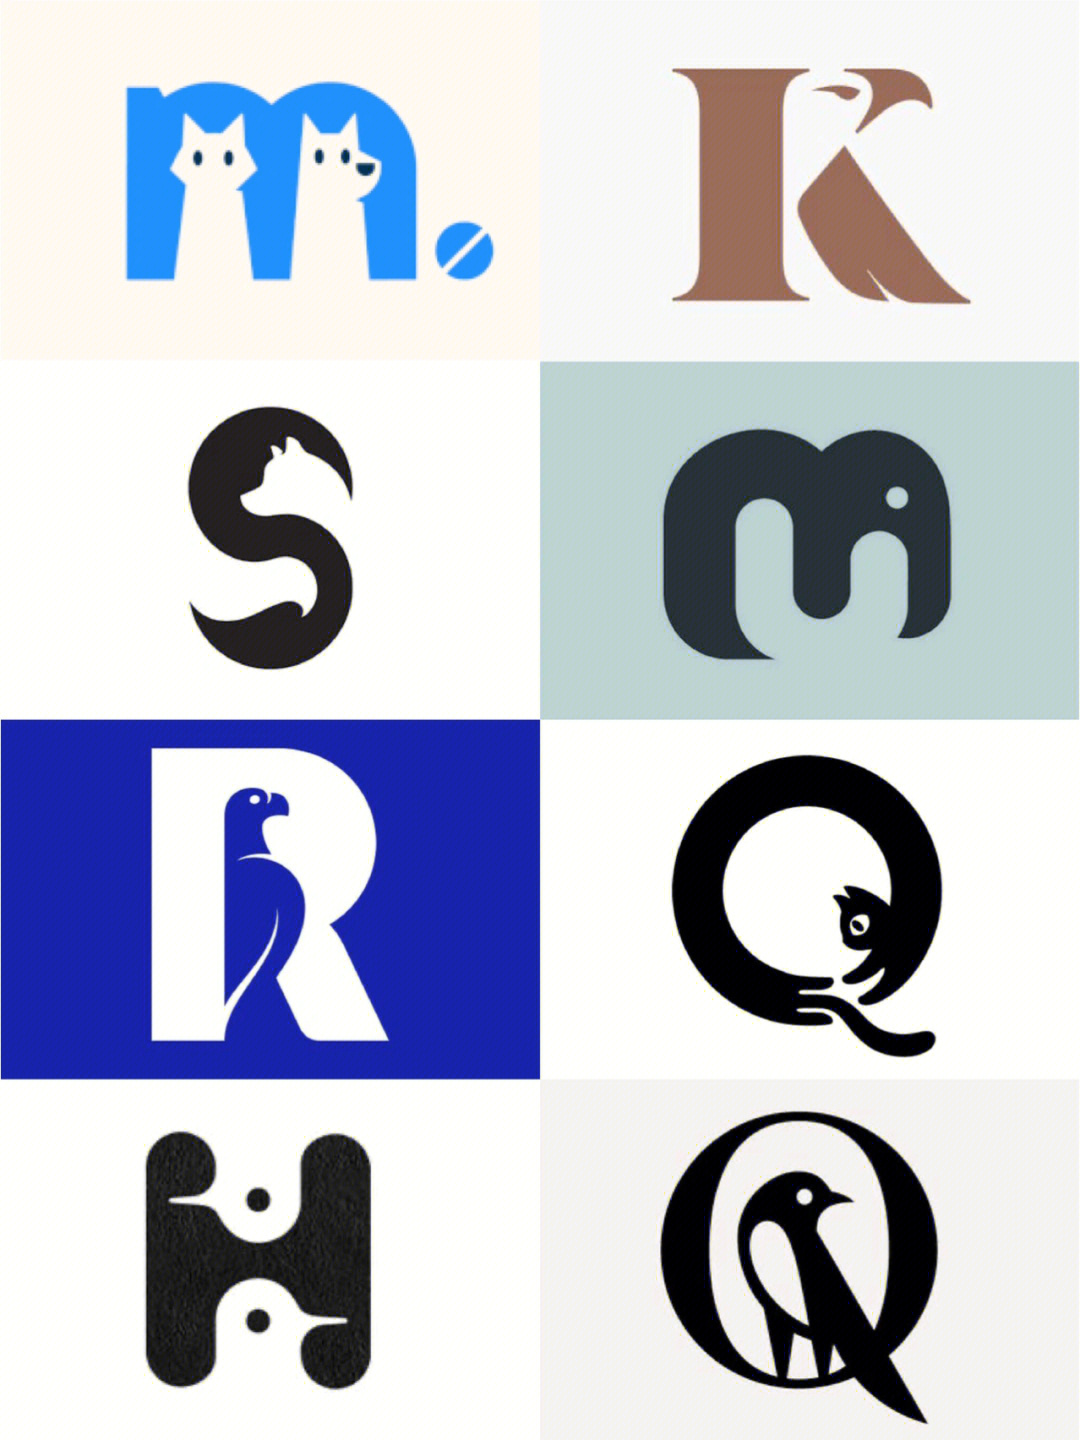 字母融合logo生成图片